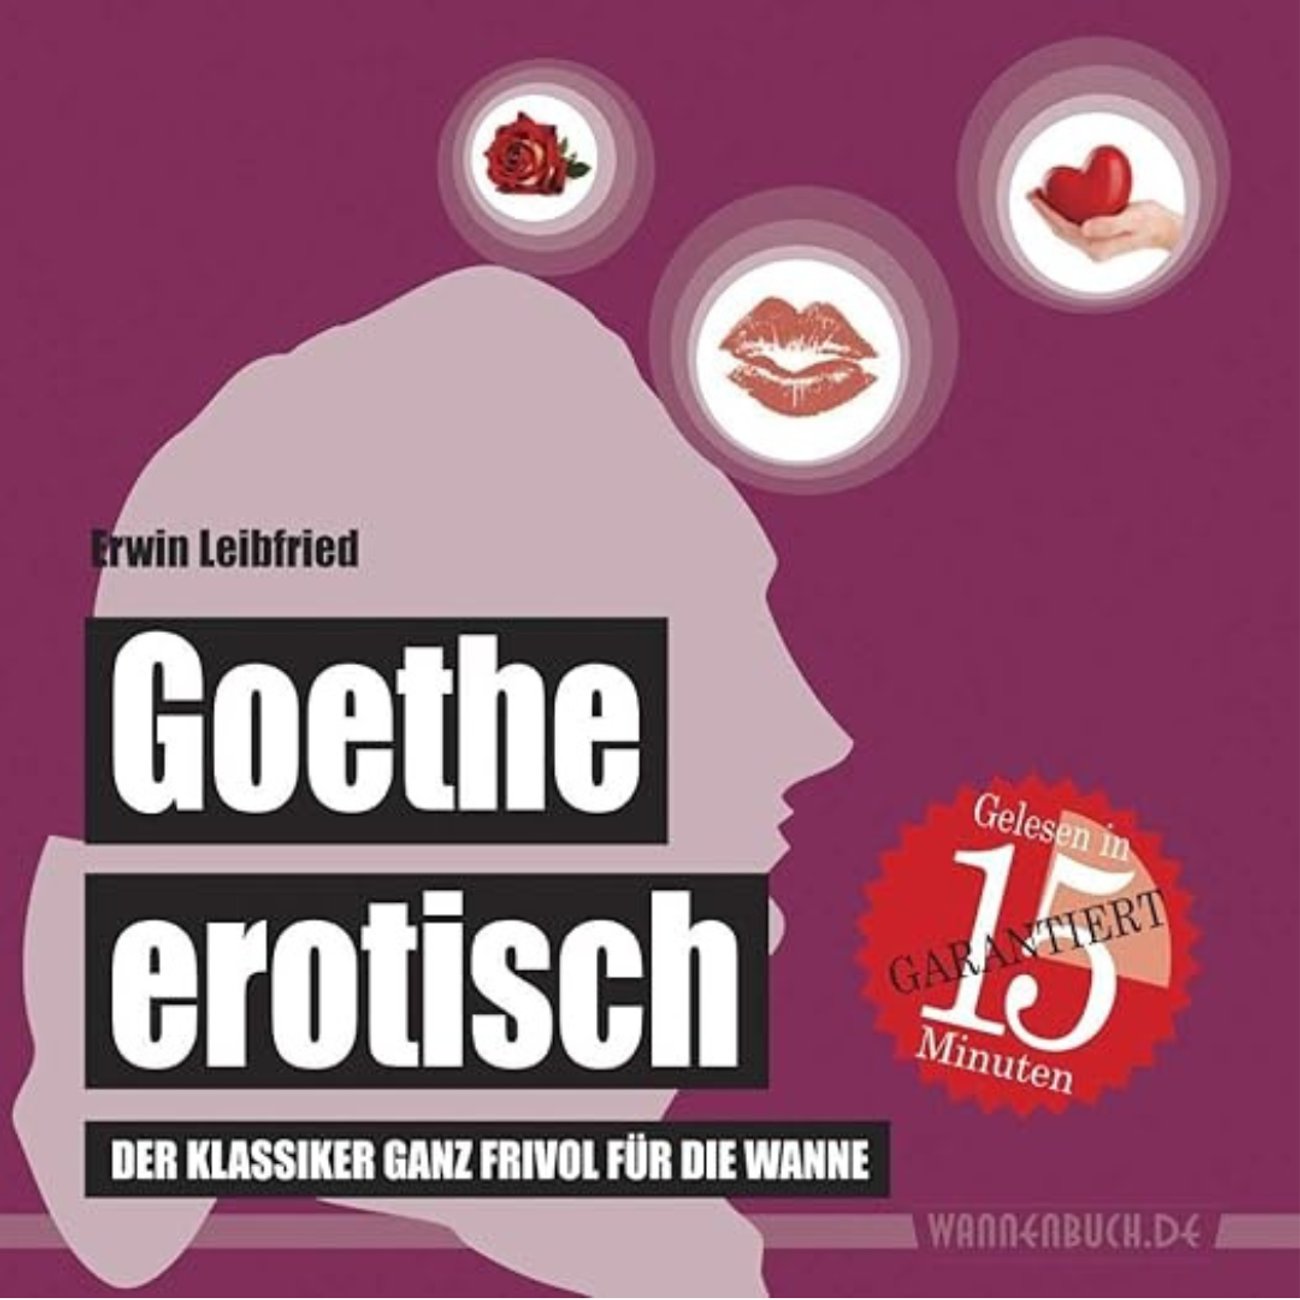 Goethe erotisch: Der Klassiker